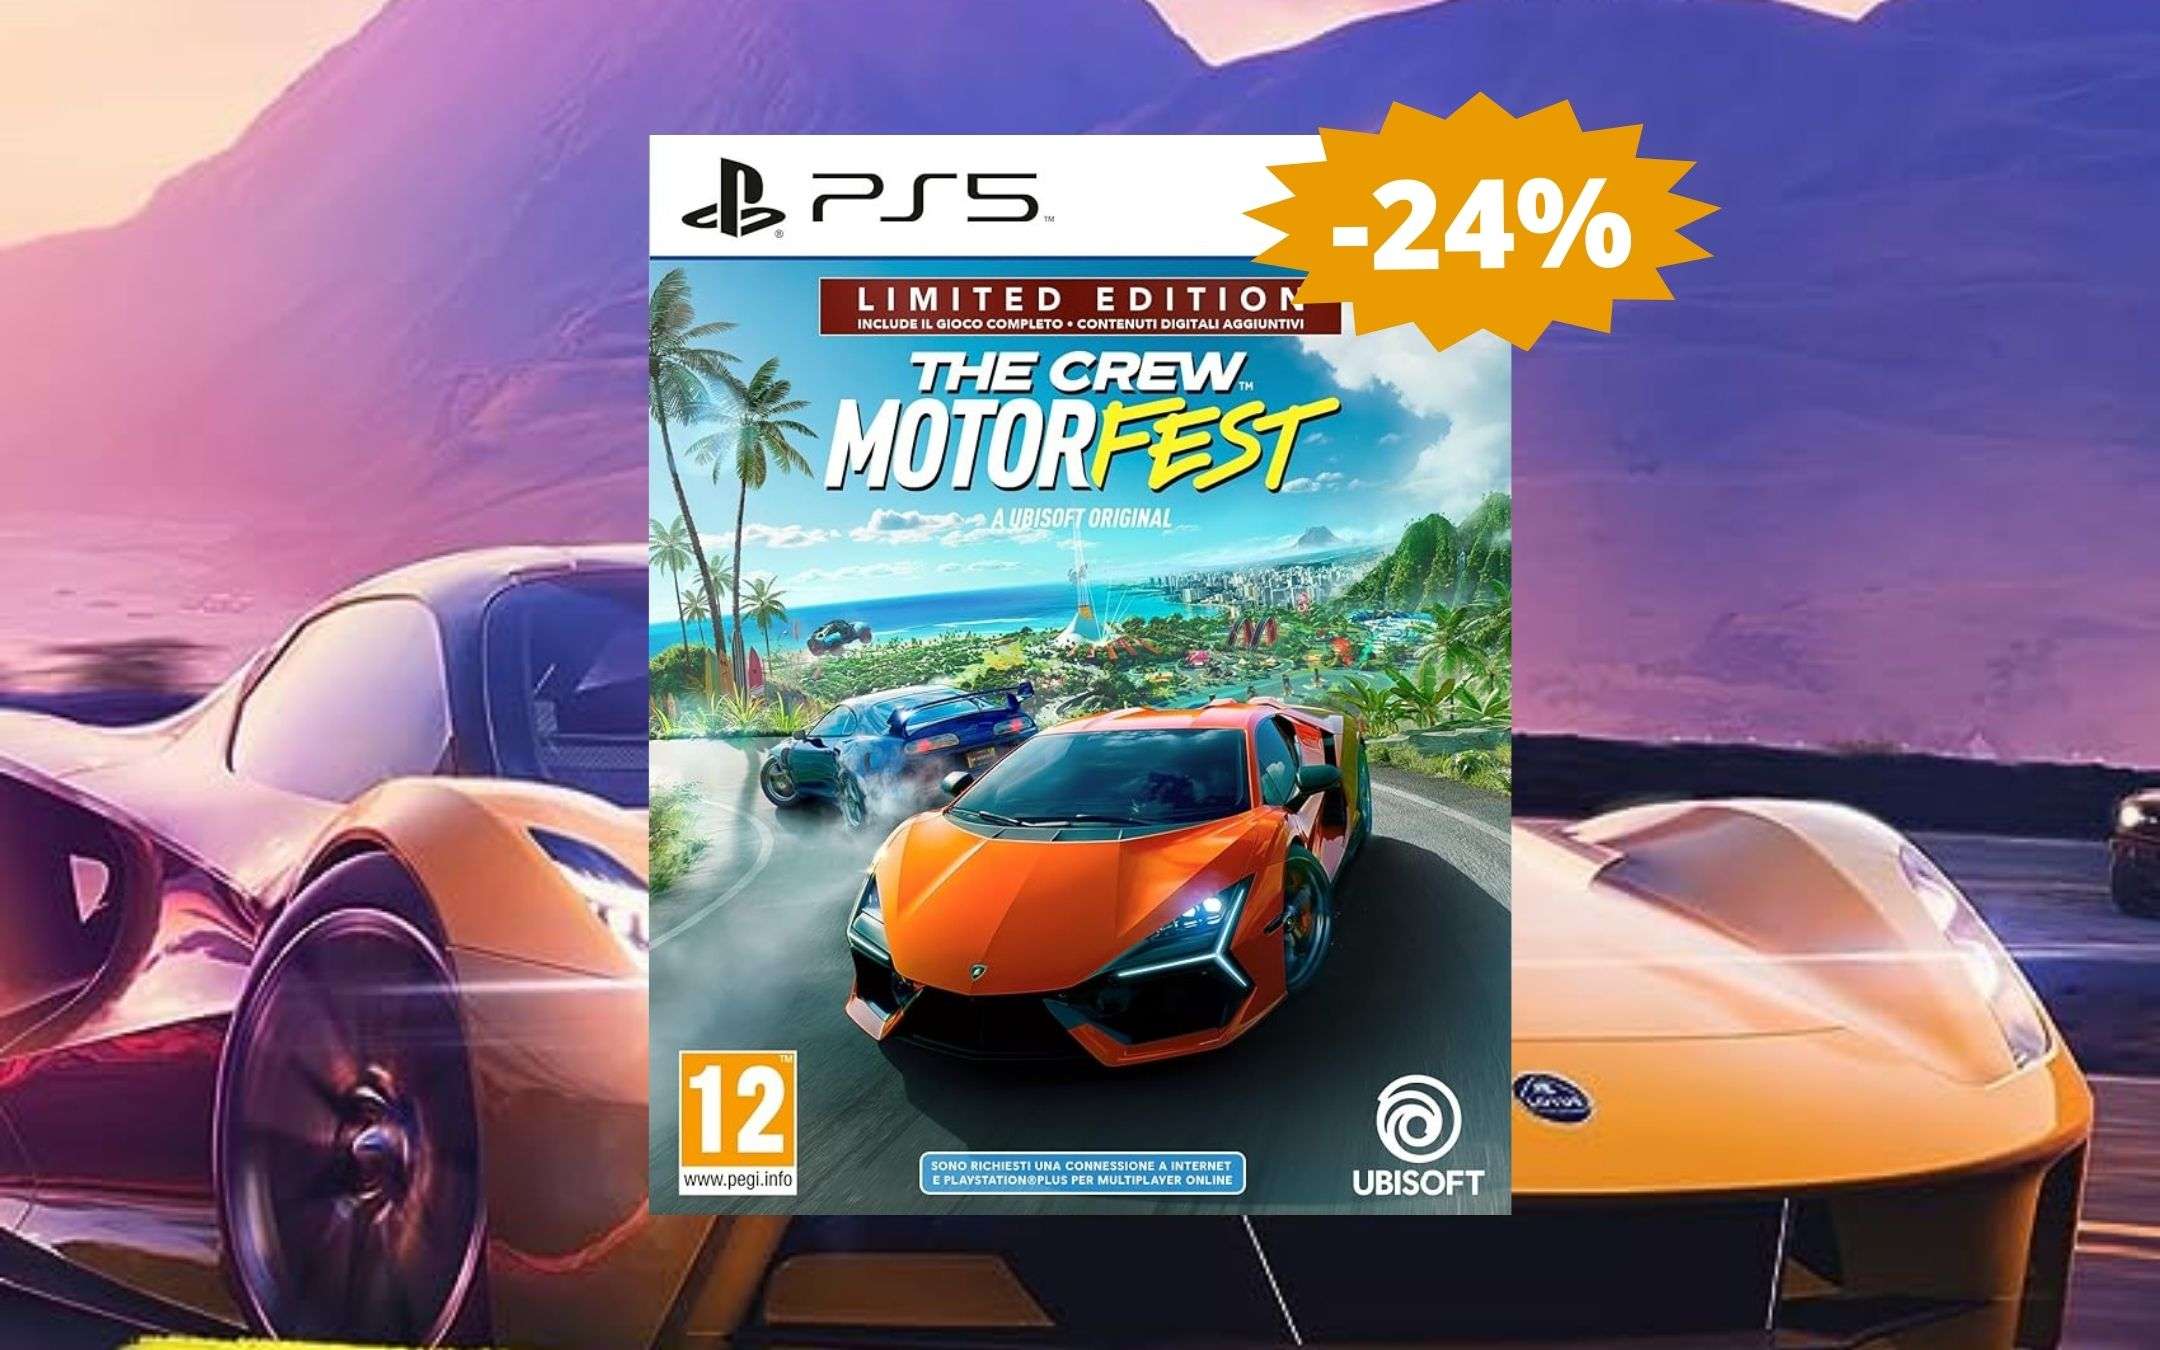 The Crew Motorfest per PS5: la limited edition in SUPER sconto